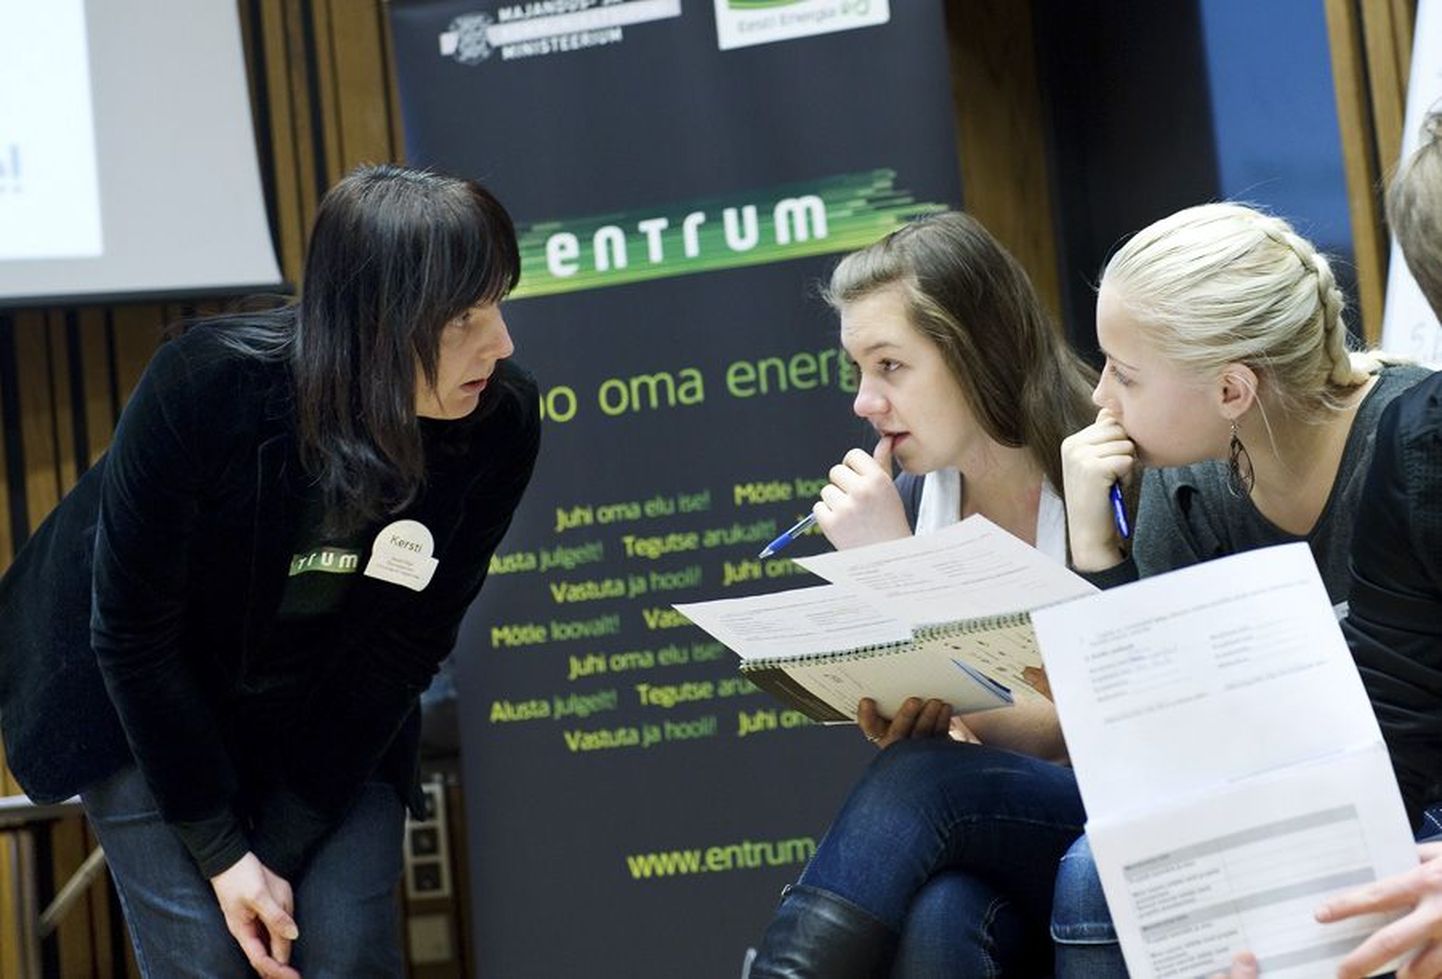 Eelmisel kahel ammutasid Entrumi programmist ettevõtlikku meelt Ida-Virumaa ja Lõuna-Eesti maakondade õpilased. Viljandimaa osaleb ettevõtmises koos Edela- ning Lääne-Eestiga.